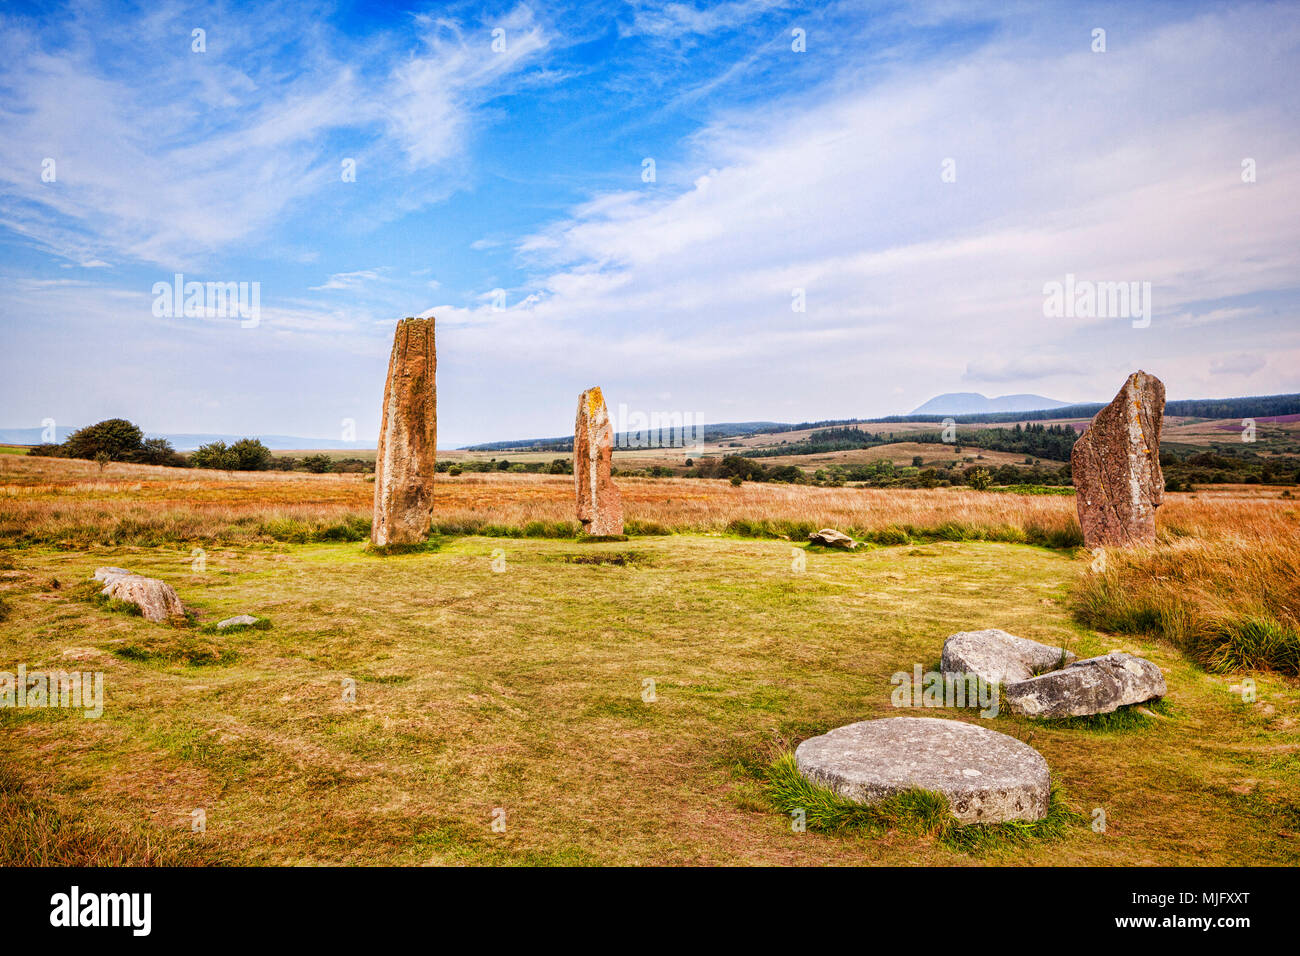 Machrie Moor 2 cercle de pierre, un ancien monument mégalithique de l'année 4000 sur l'île d'Arran, North Ayrshire, Ecosse. Banque D'Images